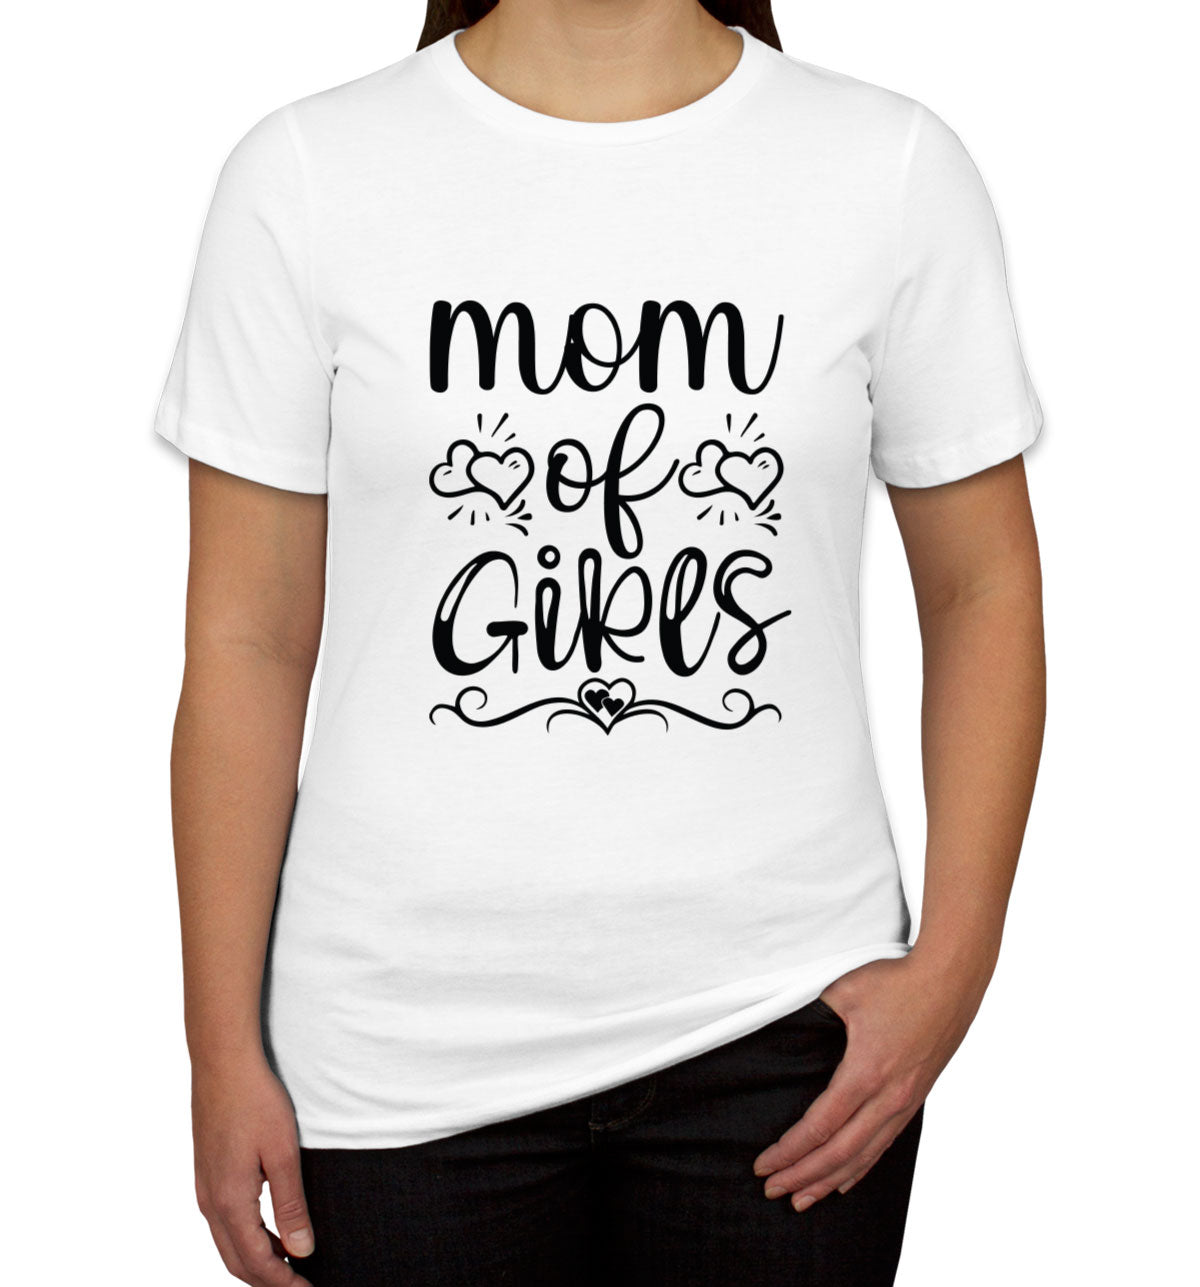 Mom Of Girls Women's T-shirt